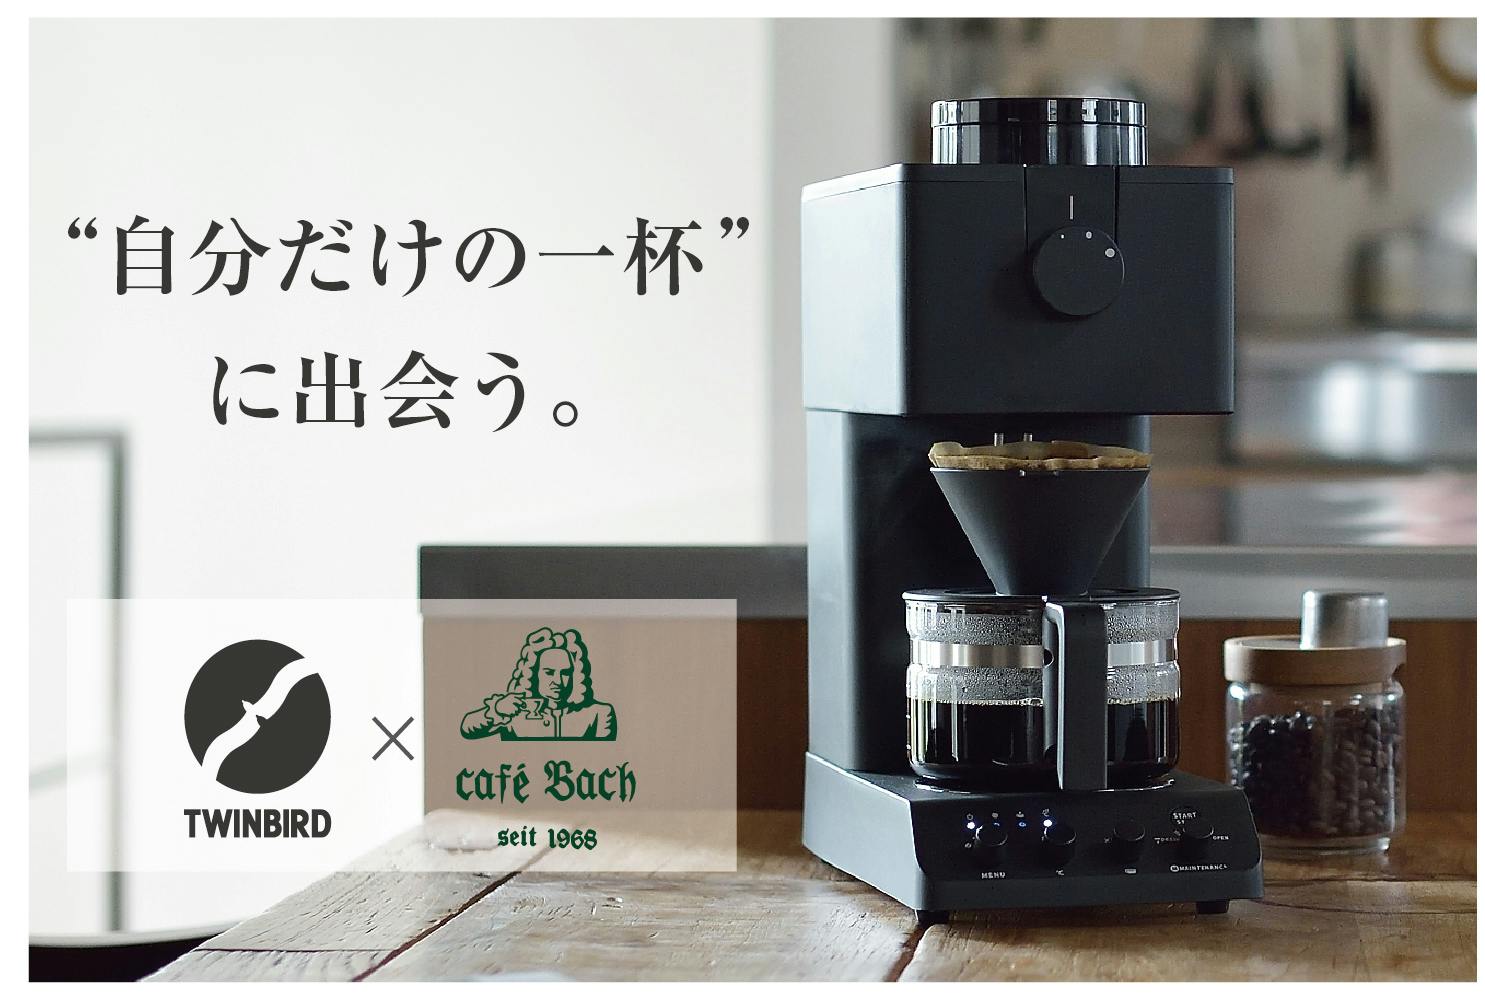 ツインバード 全自動コーヒーメーカー ブラック  CM-D457B  2台セット